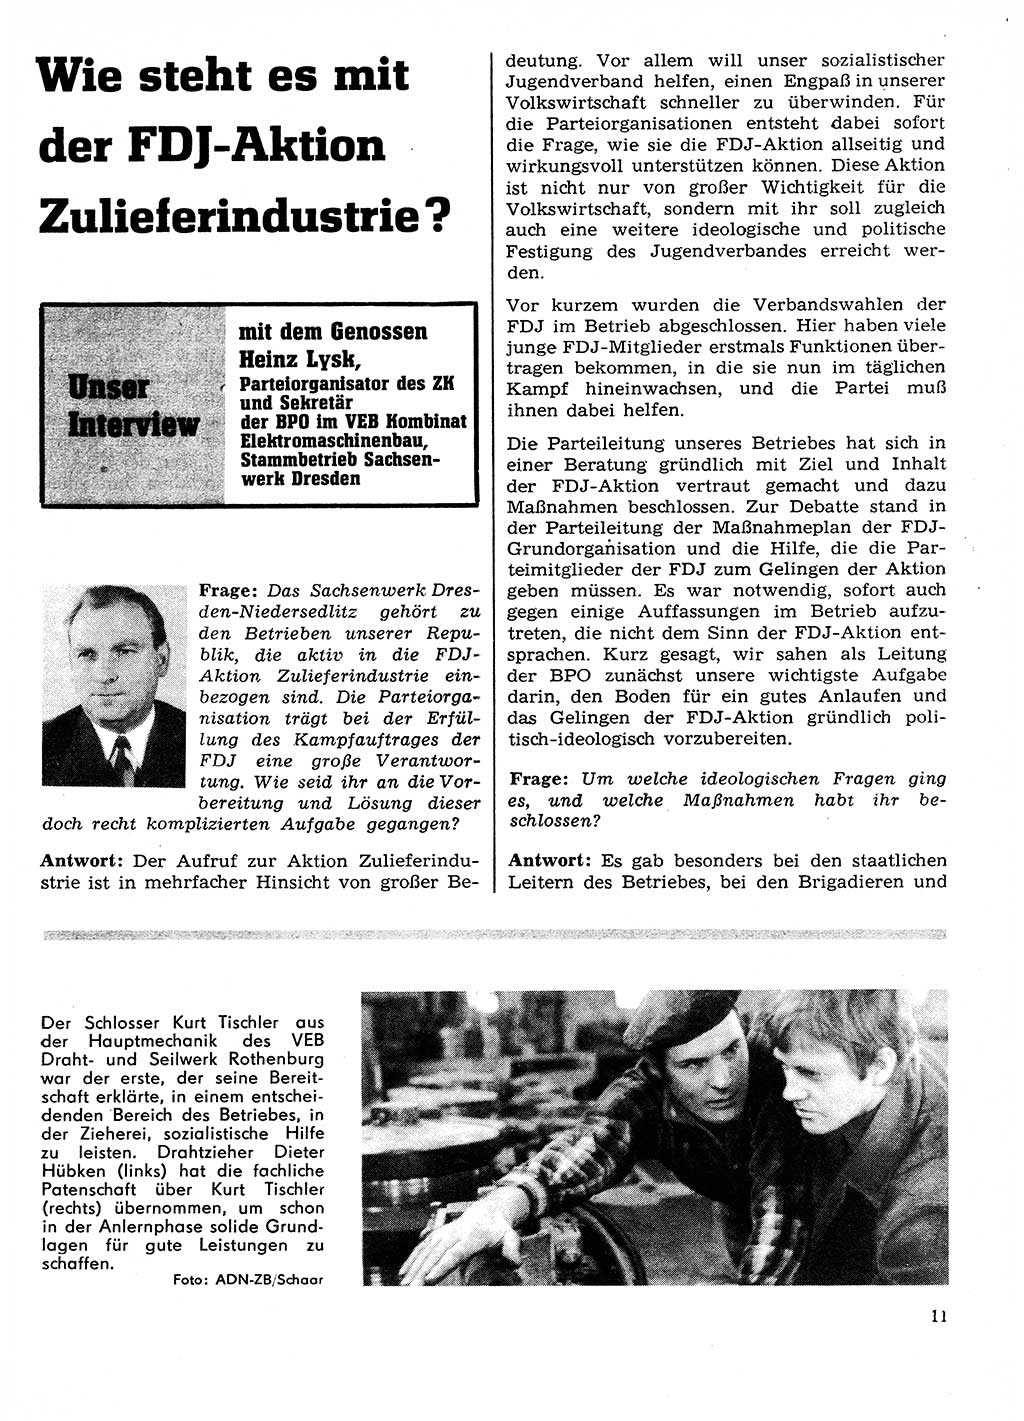 Neuer Weg (NW), Organ des Zentralkomitees (ZK) der SED (Sozialistische Einheitspartei Deutschlands) für Fragen des Parteilebens, 27. Jahrgang [Deutsche Demokratische Republik (DDR)] 1972, Seite 11 (NW ZK SED DDR 1972, S. 11)